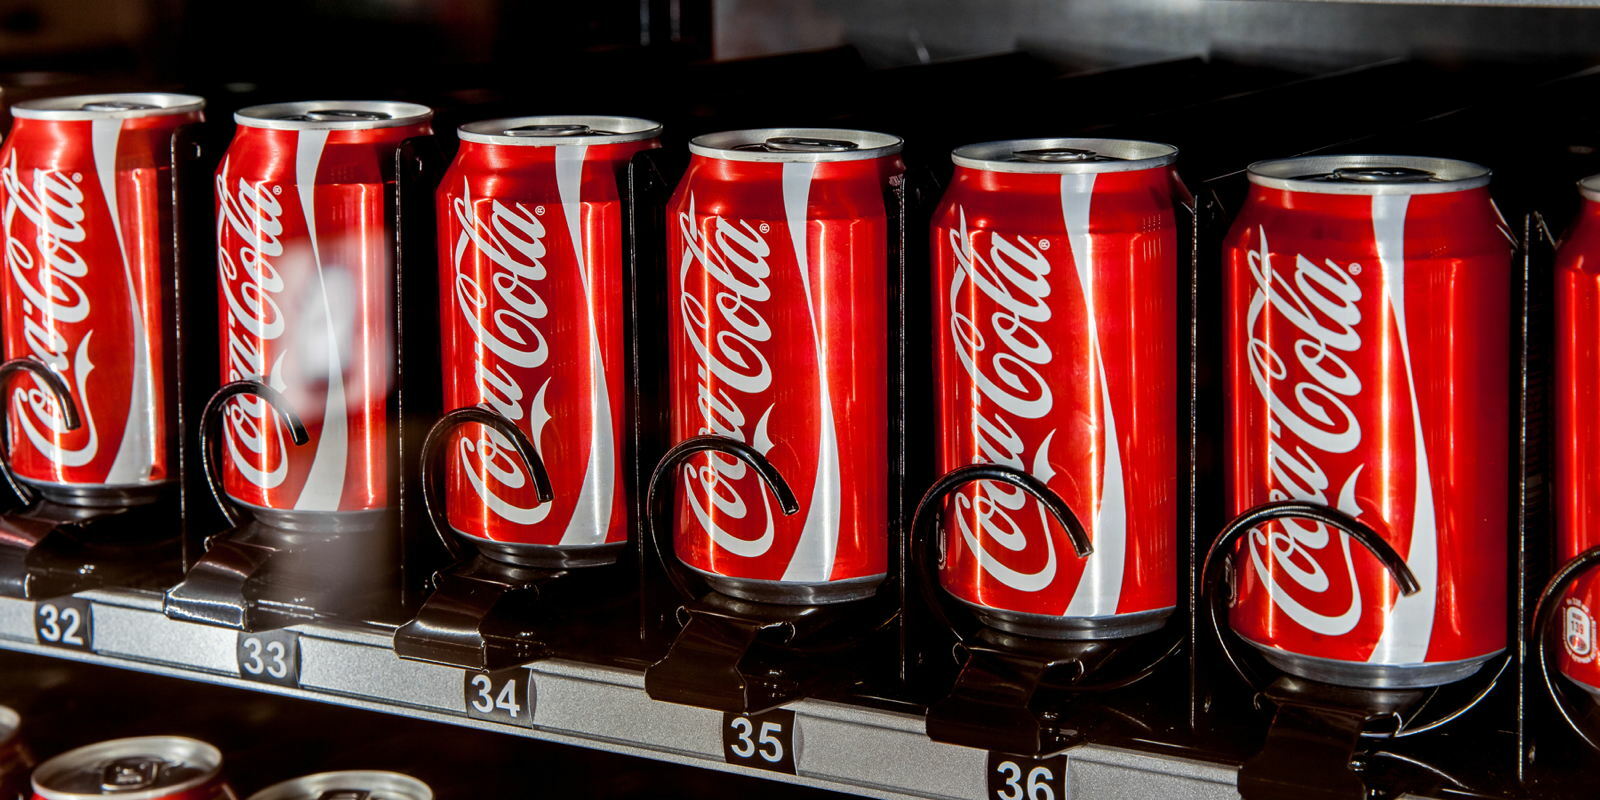 Acheter un Coca-Cola avec des bitcoins : c'est maintenant possible